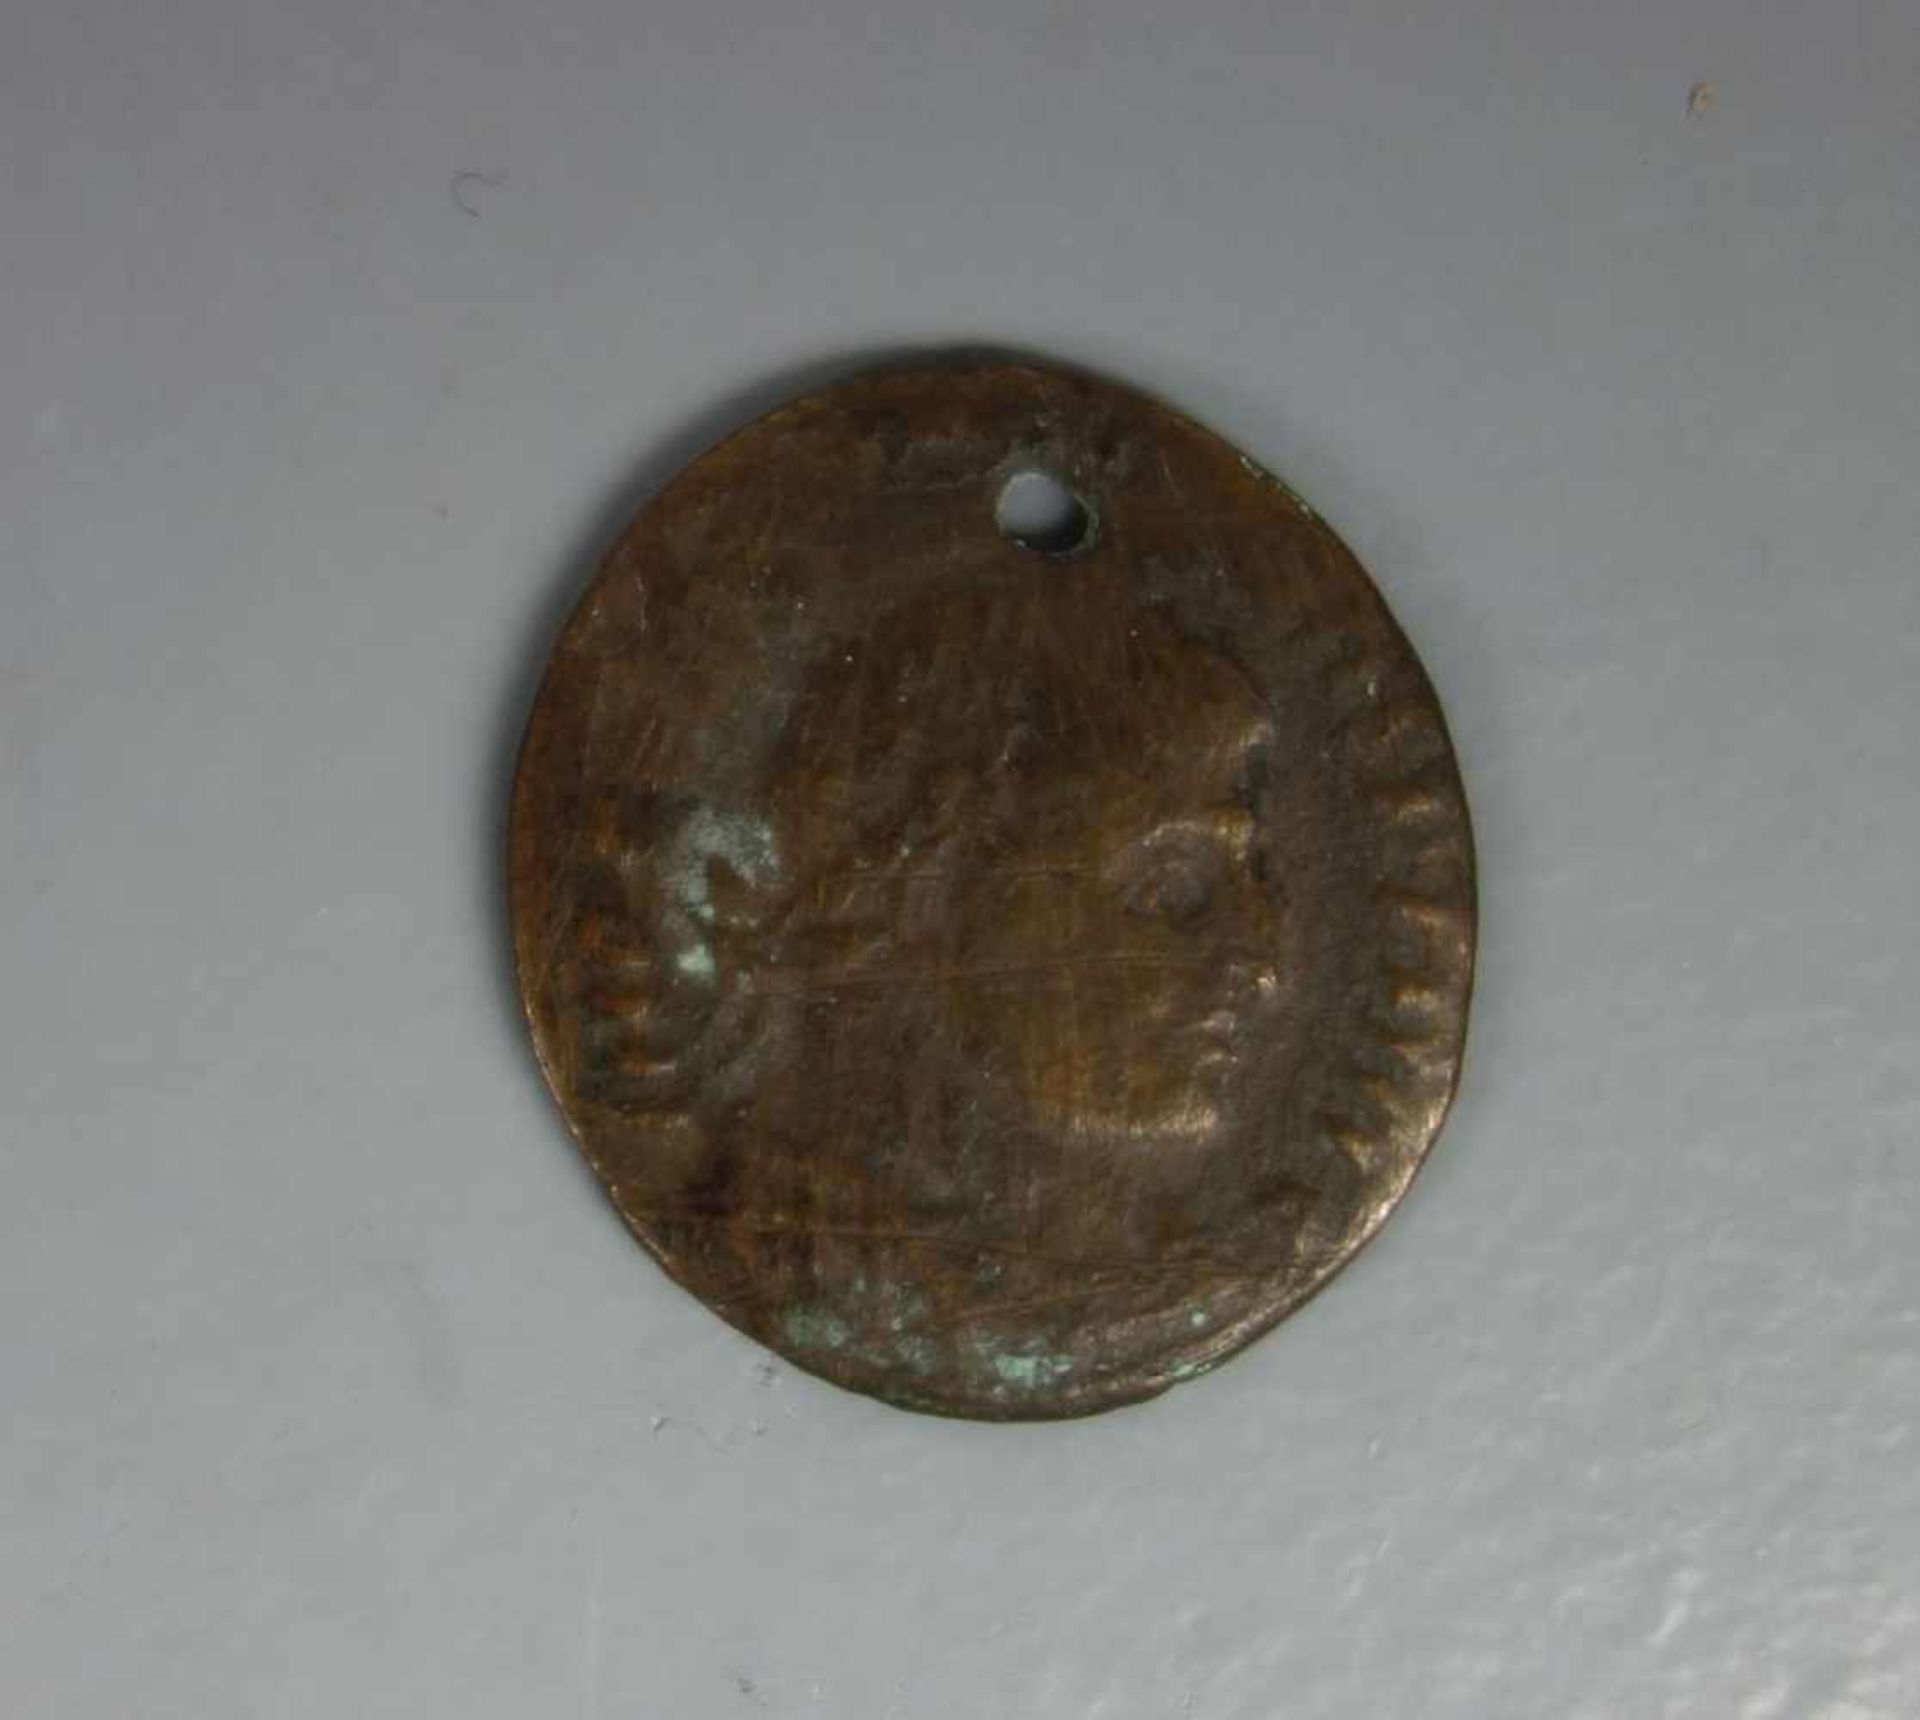 MÜNZE: DENAR (RÖM. KAISERZEIT 200-300 n. Chr.) / coin. Messing/Kupfer. Antike Münze der römischen